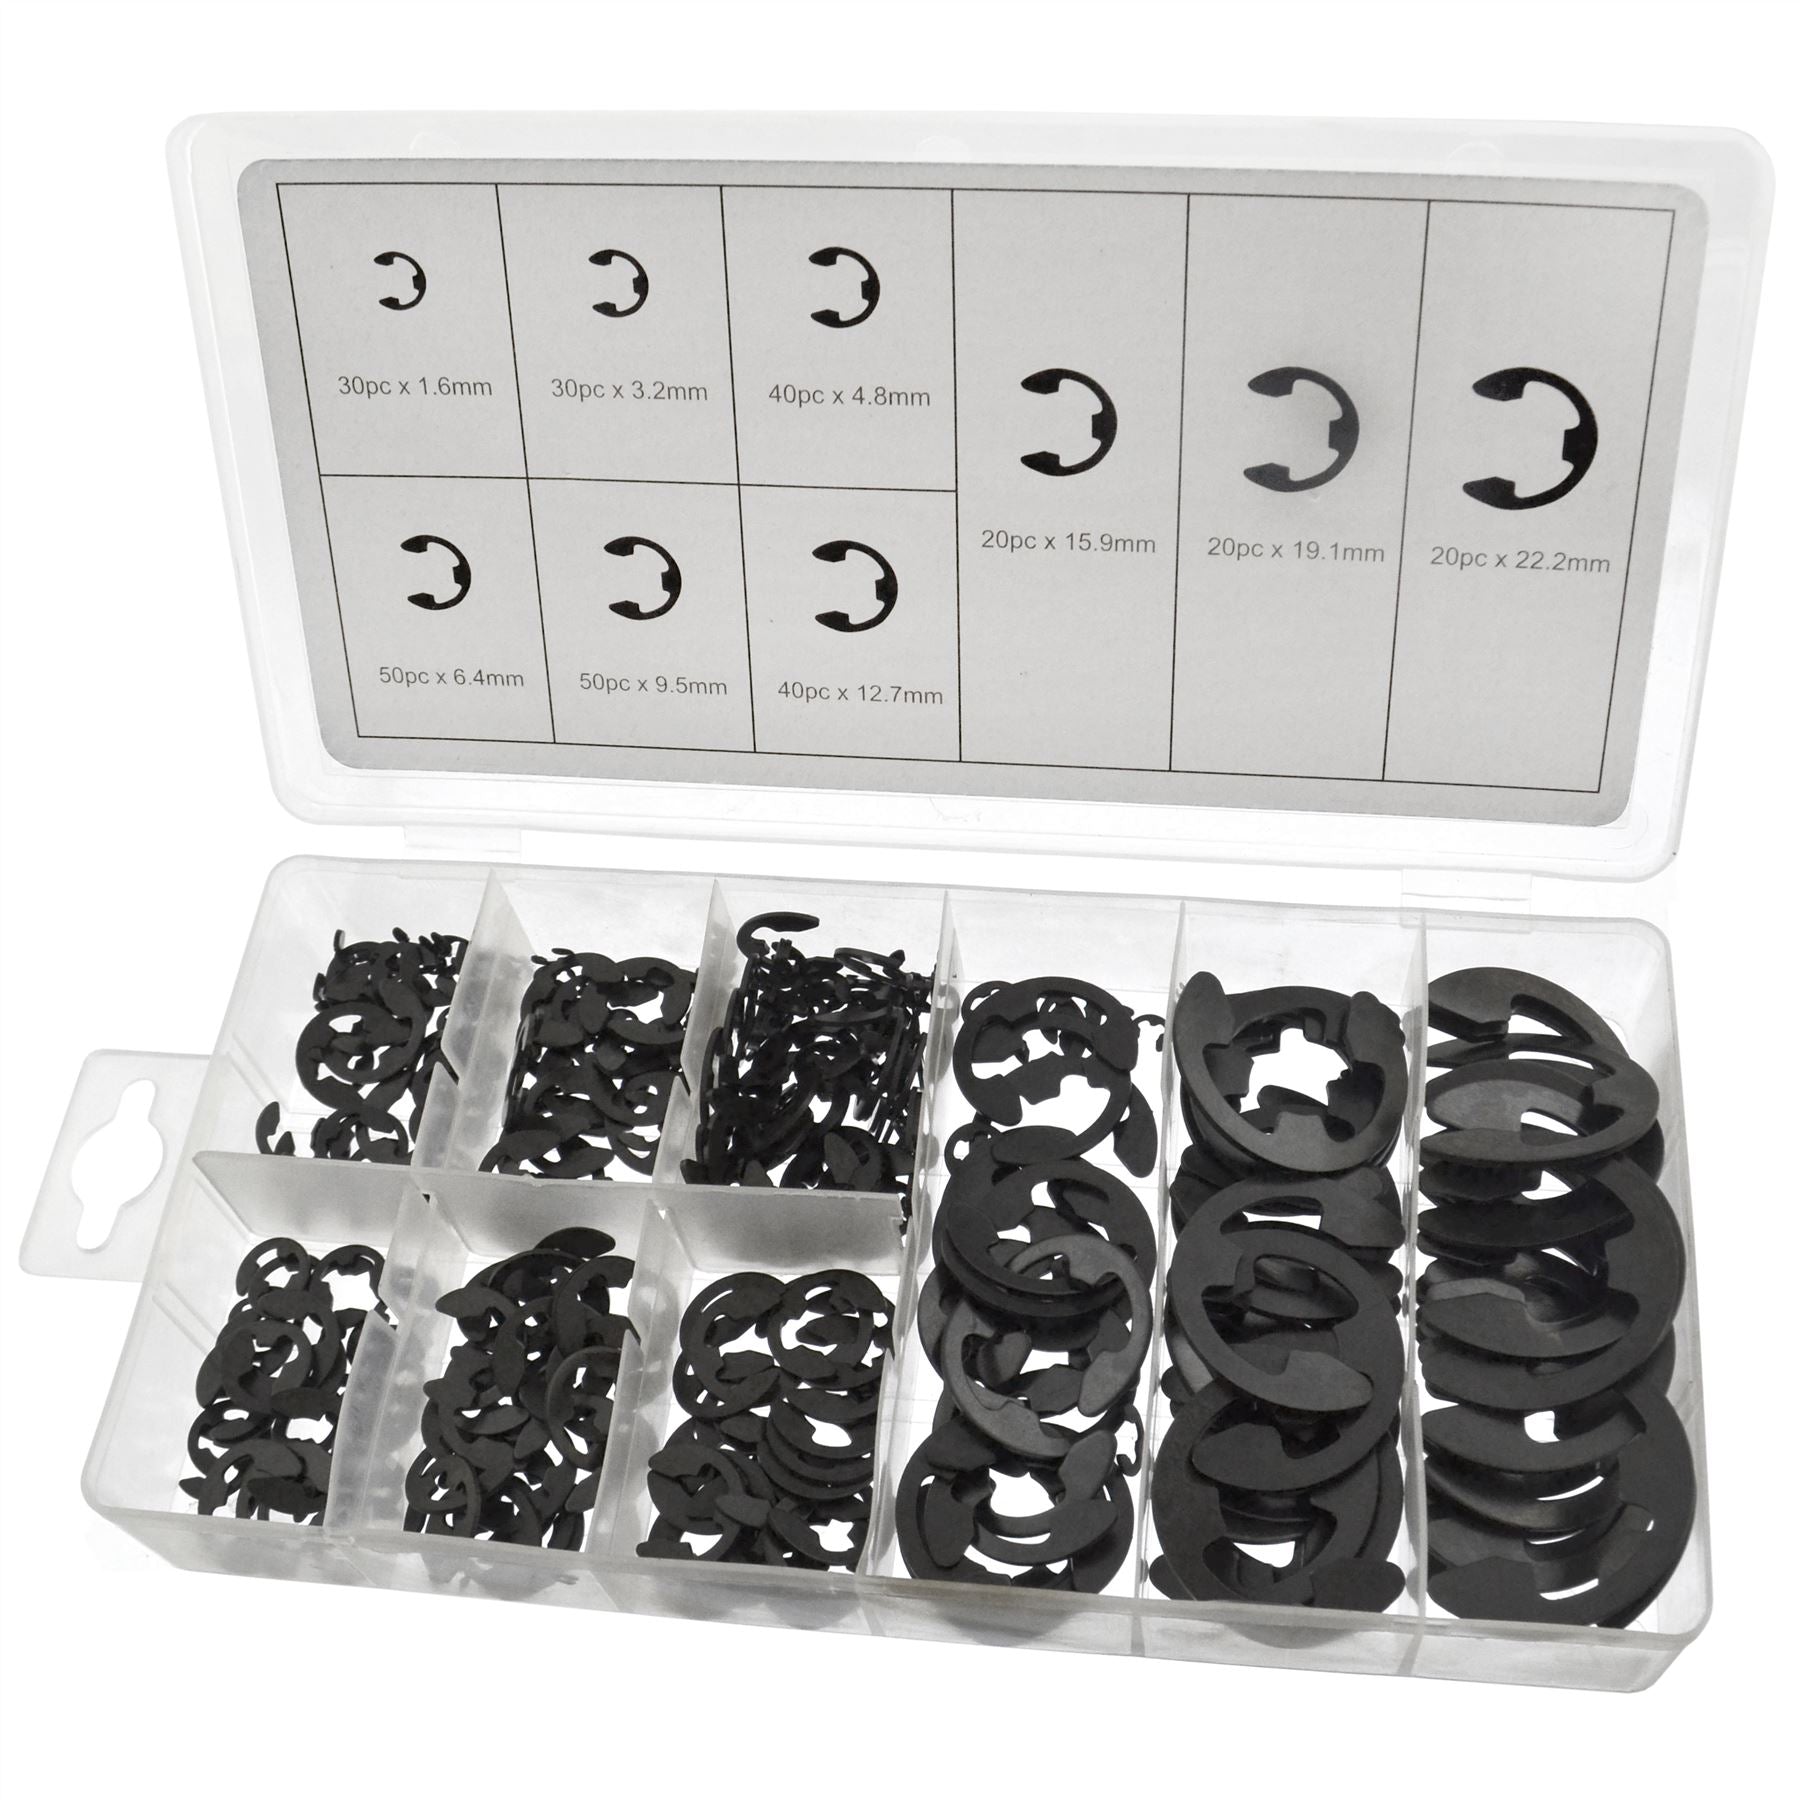 300pc E-Clip Assortment Retaining Snap Ring Circlip Kit 1.6 - 22.2mm E Clip